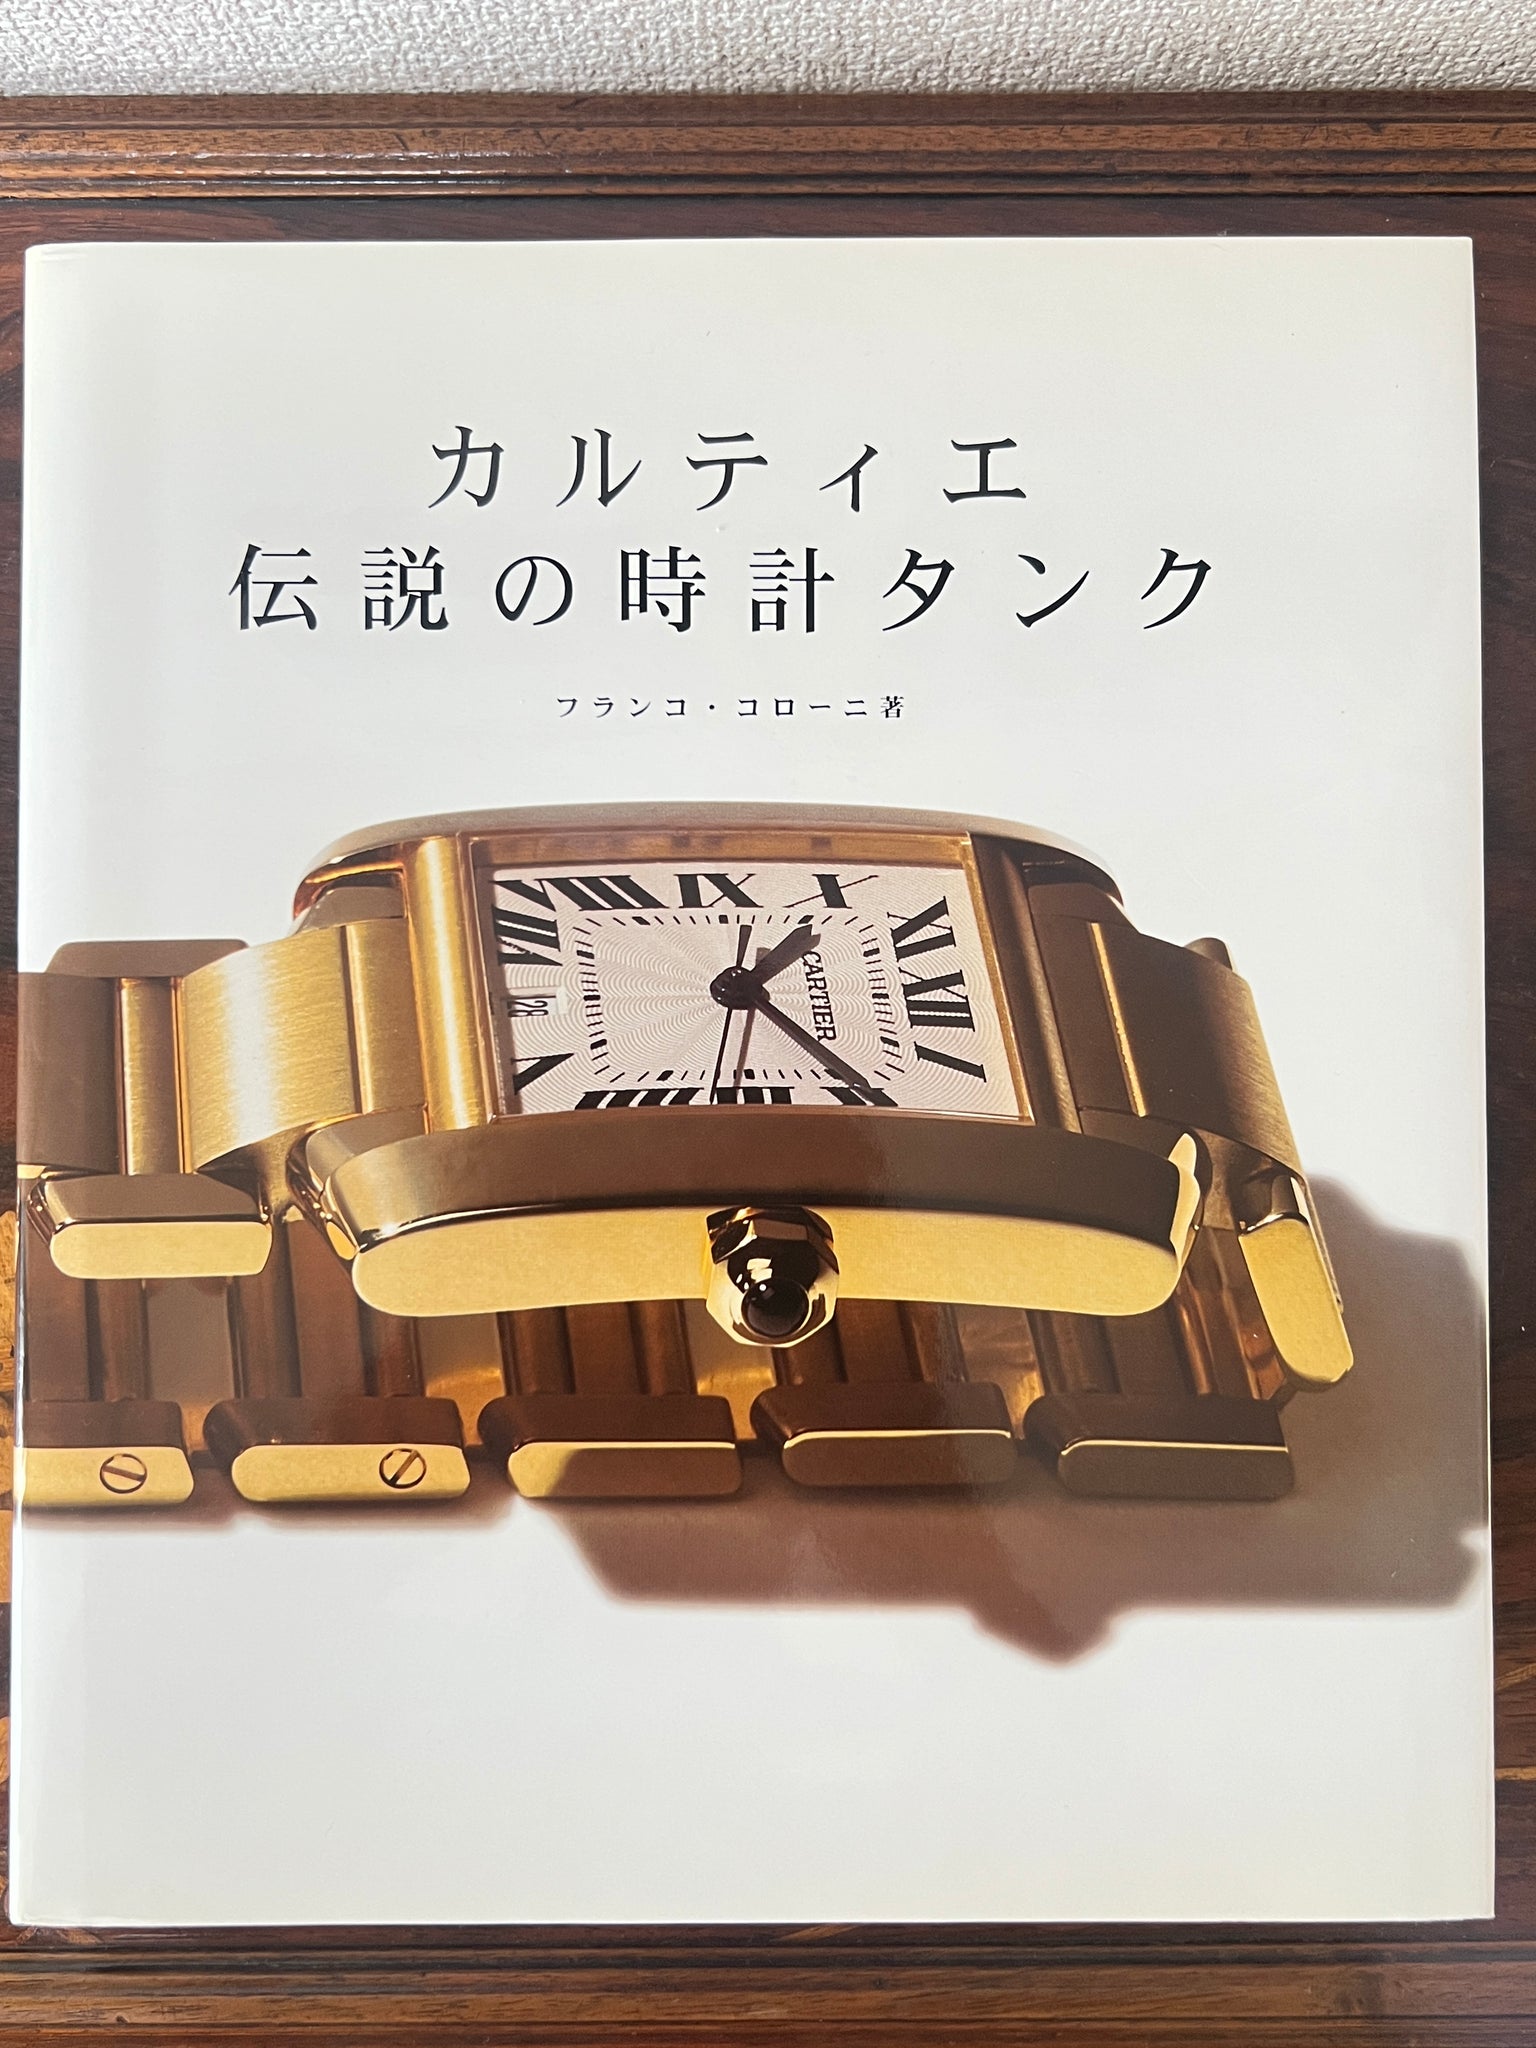 フランコ・コローニの著書『カルティエ・伝説の時計タンク』